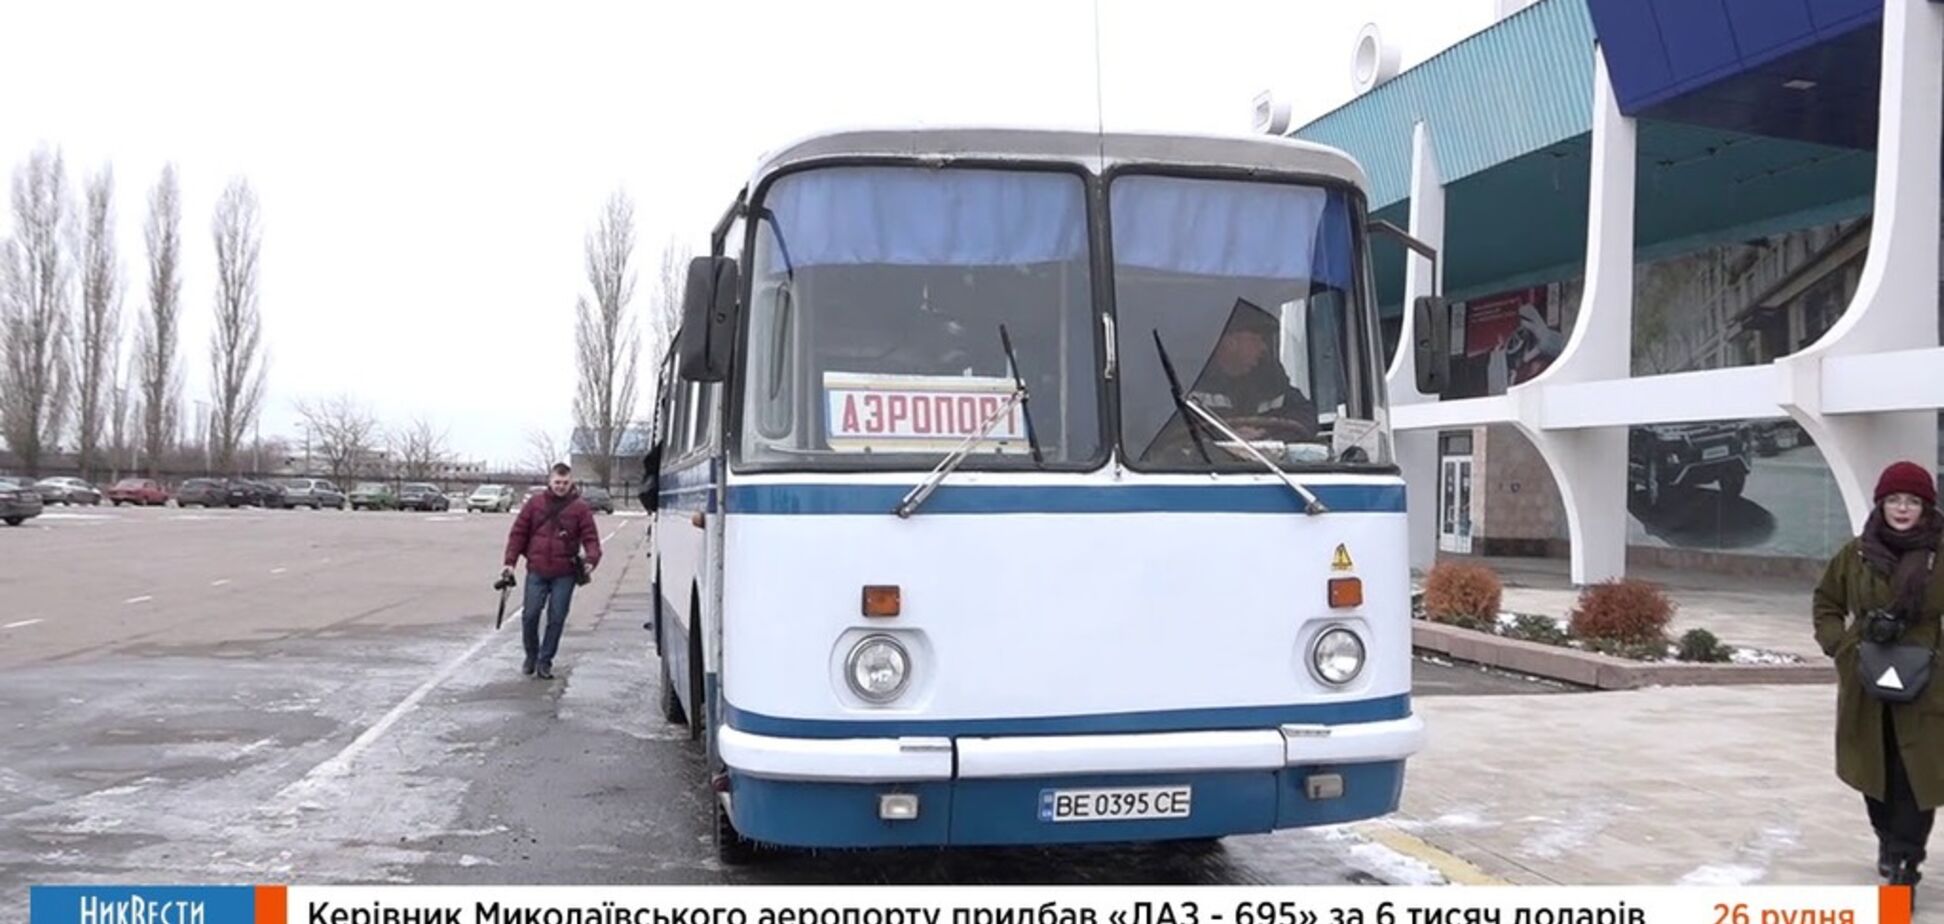 Николаевский аэропорт приобрел 'уникальный' 40-летний автобус для перевозки пассажиров